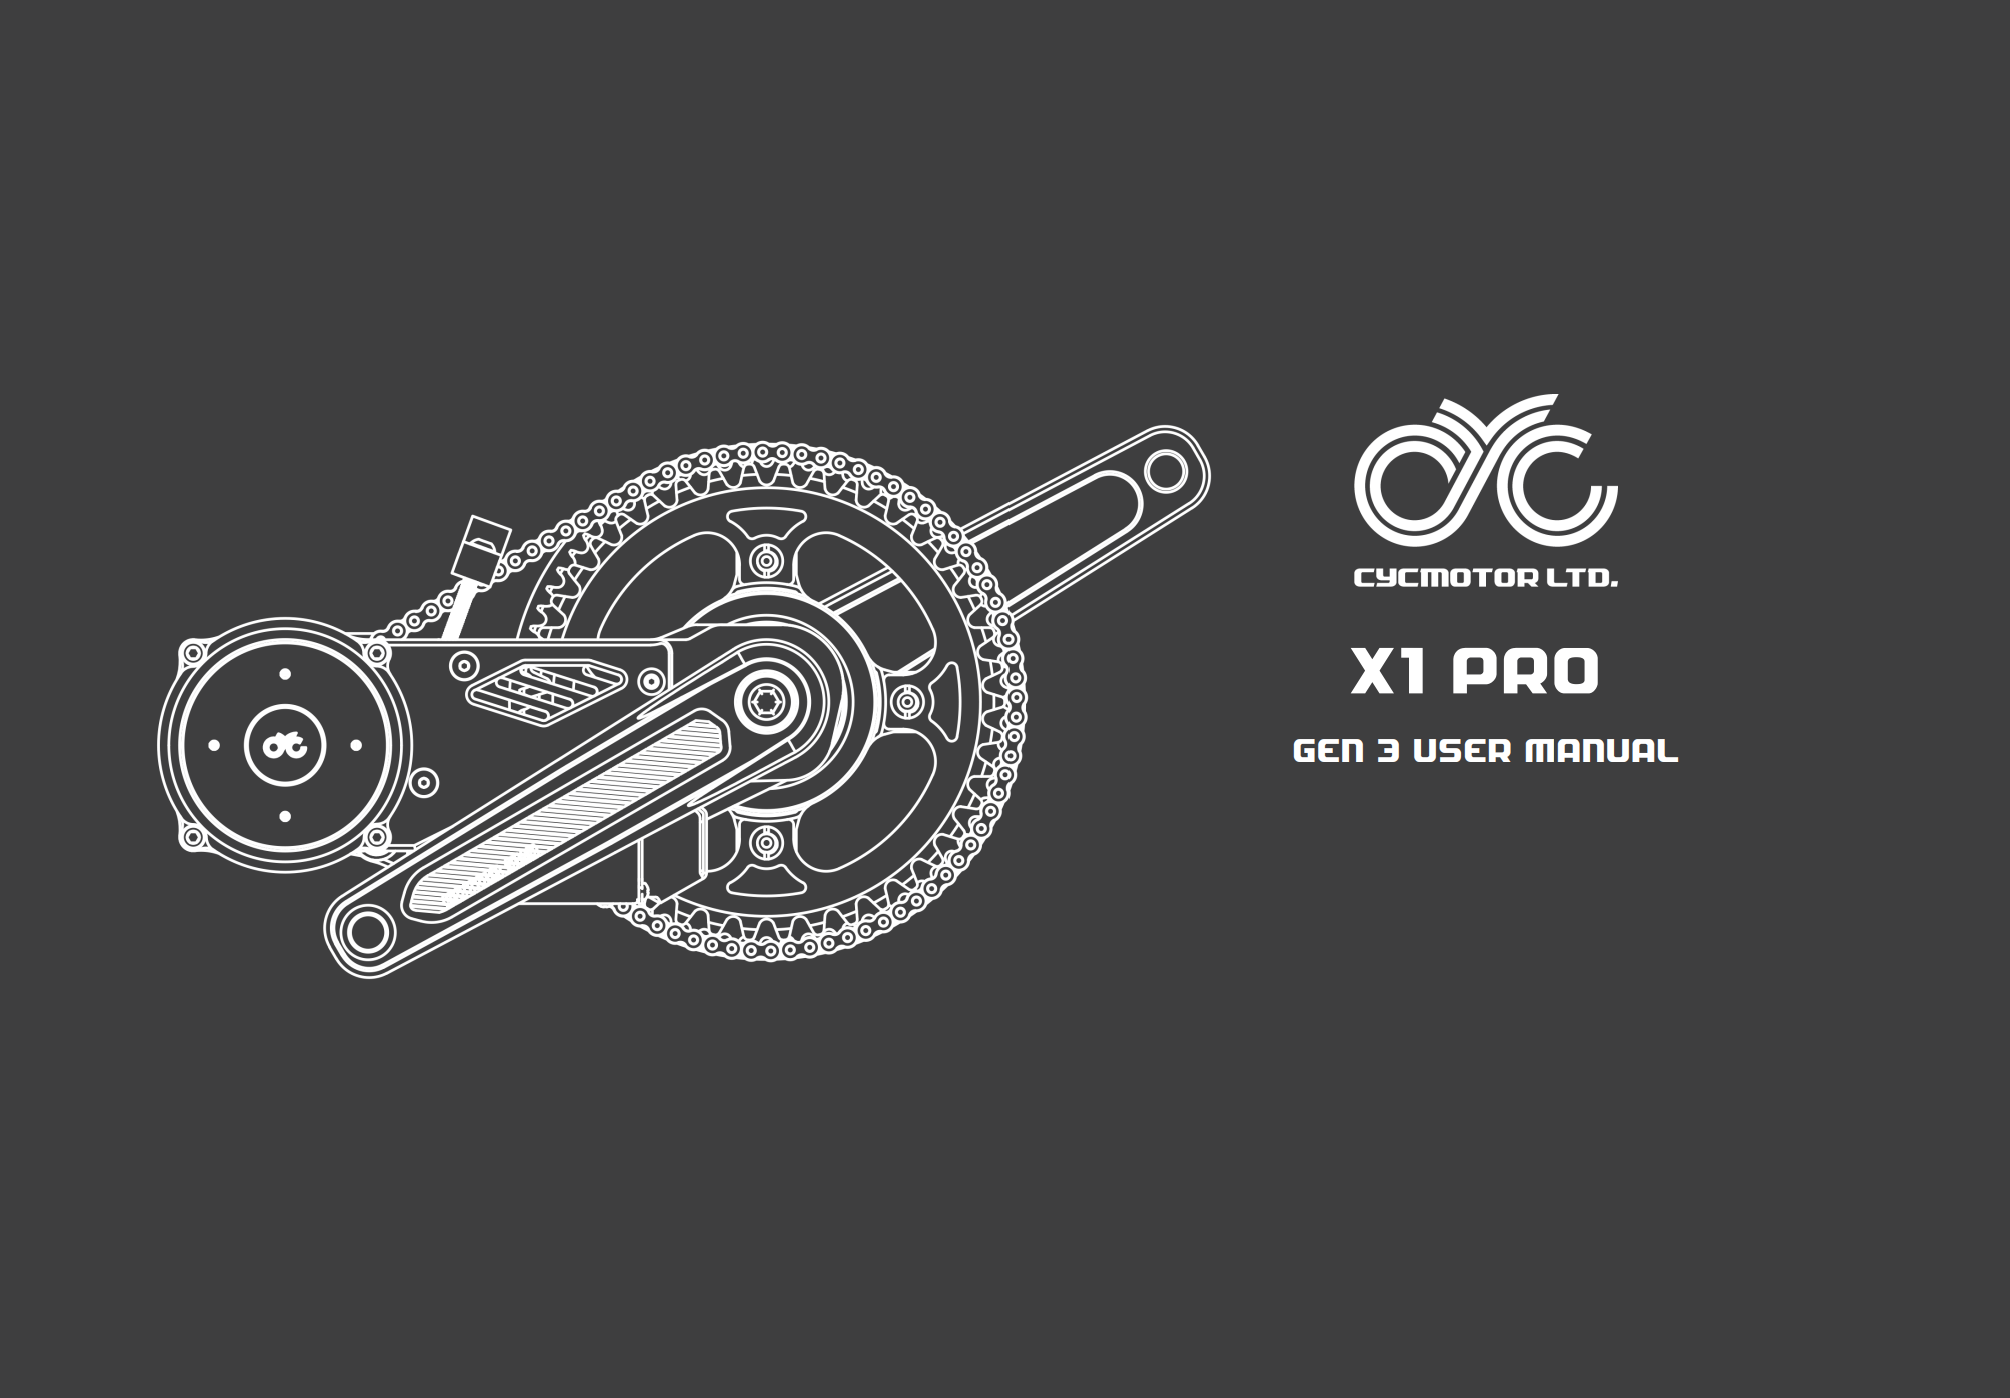 User manual for CYC X1 Pro Gen 3 electric bike